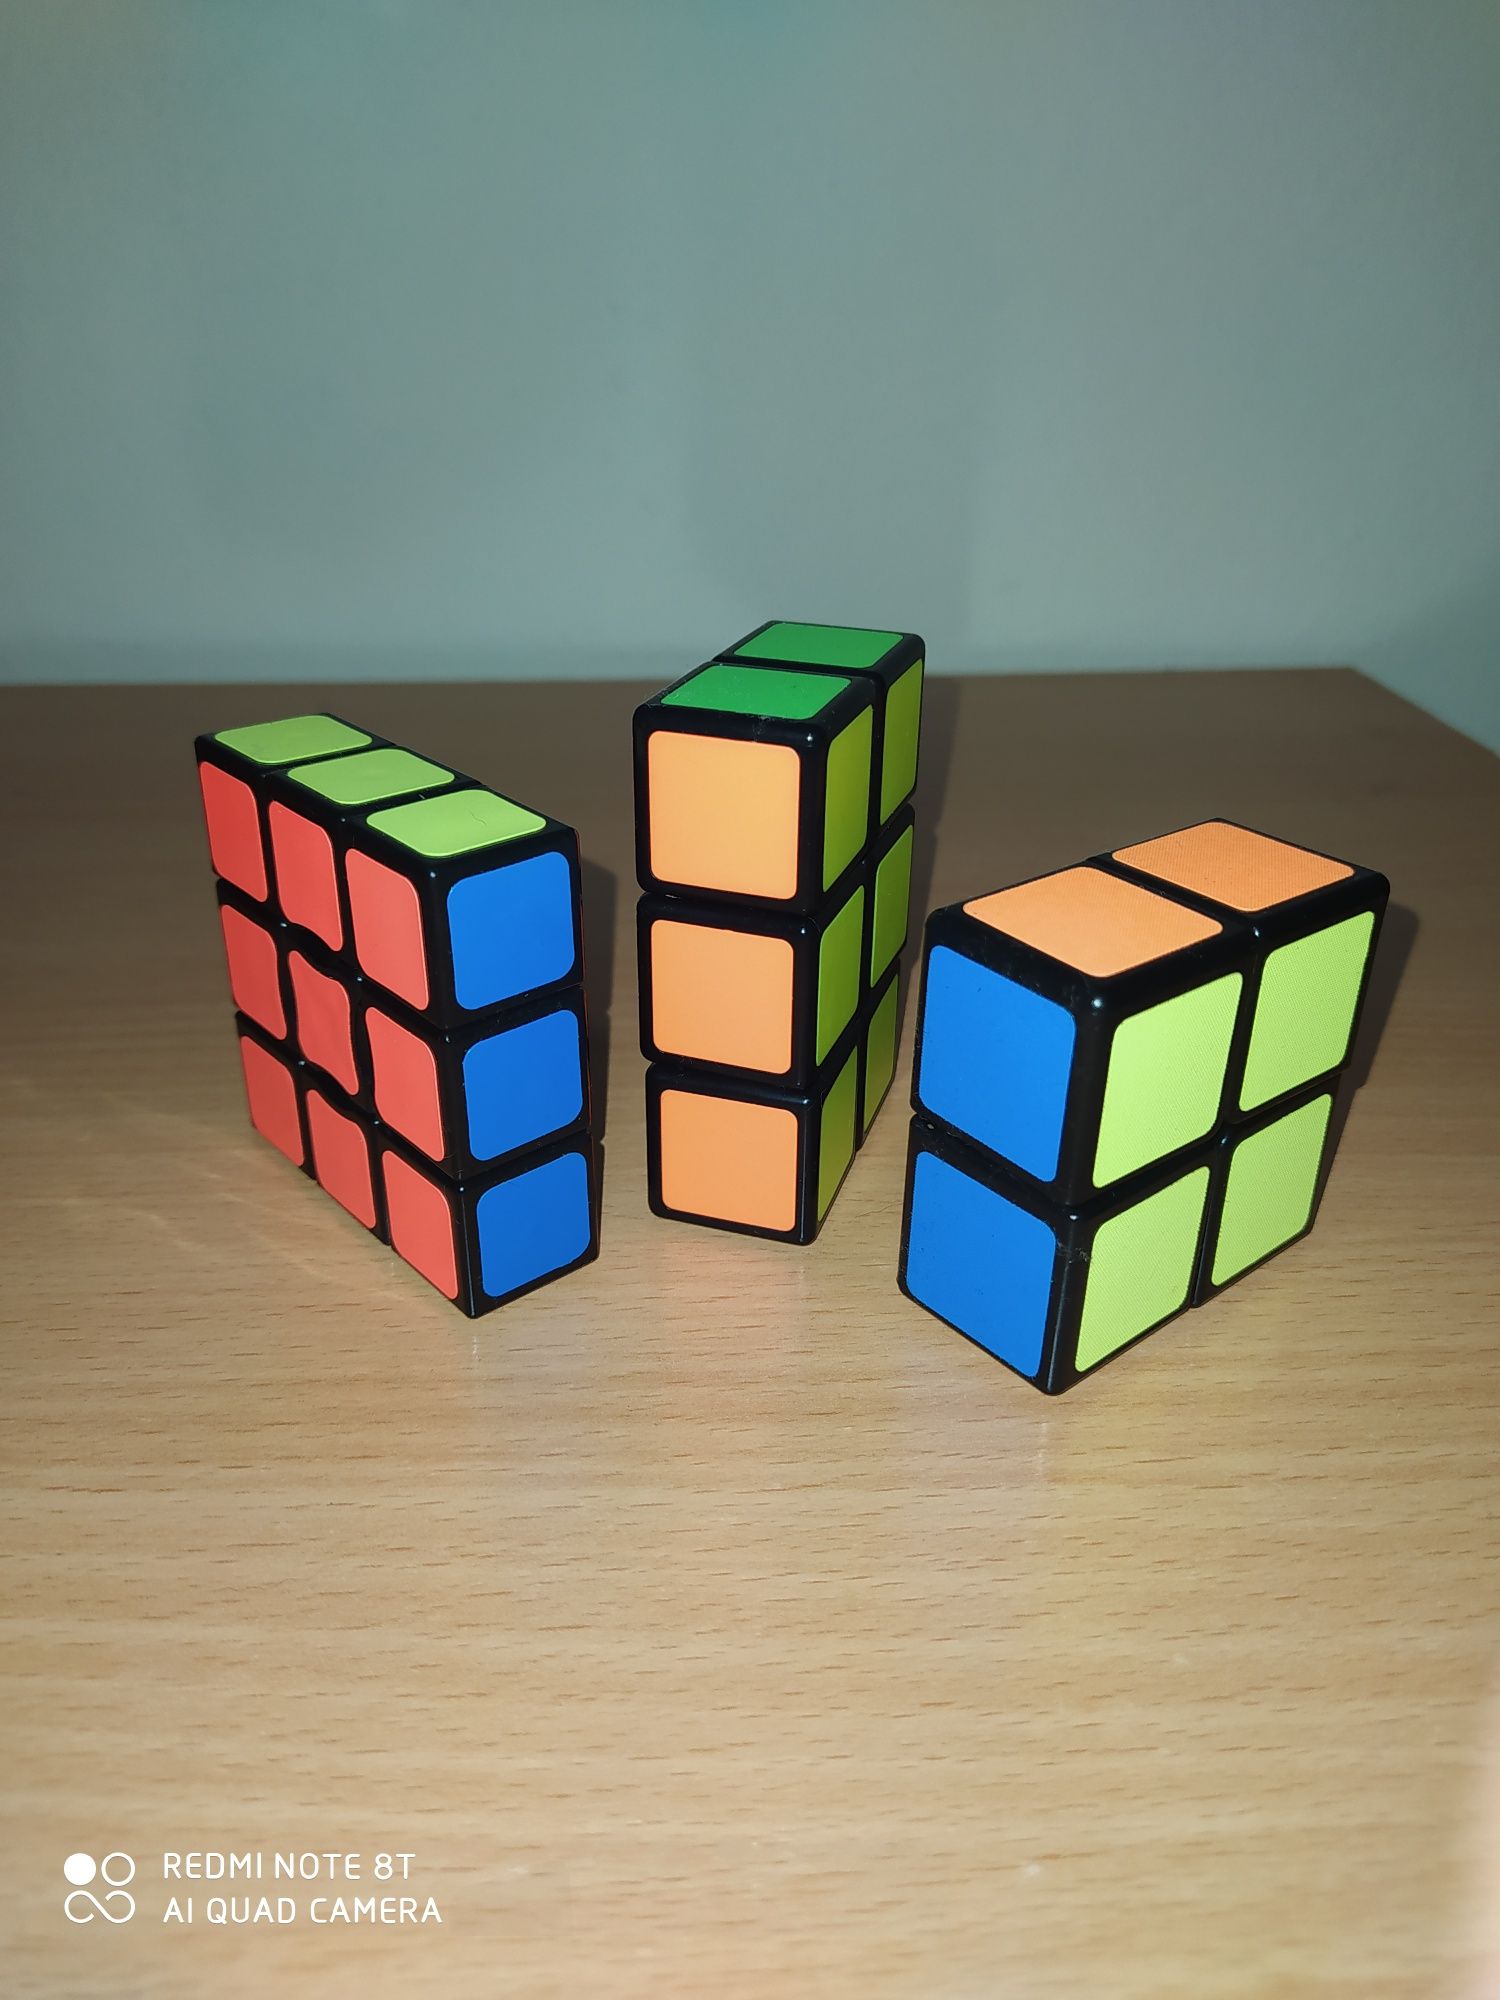 Cubo mágico - 1x2x2, 2x2x3, 2x3x3 e 1x2x3